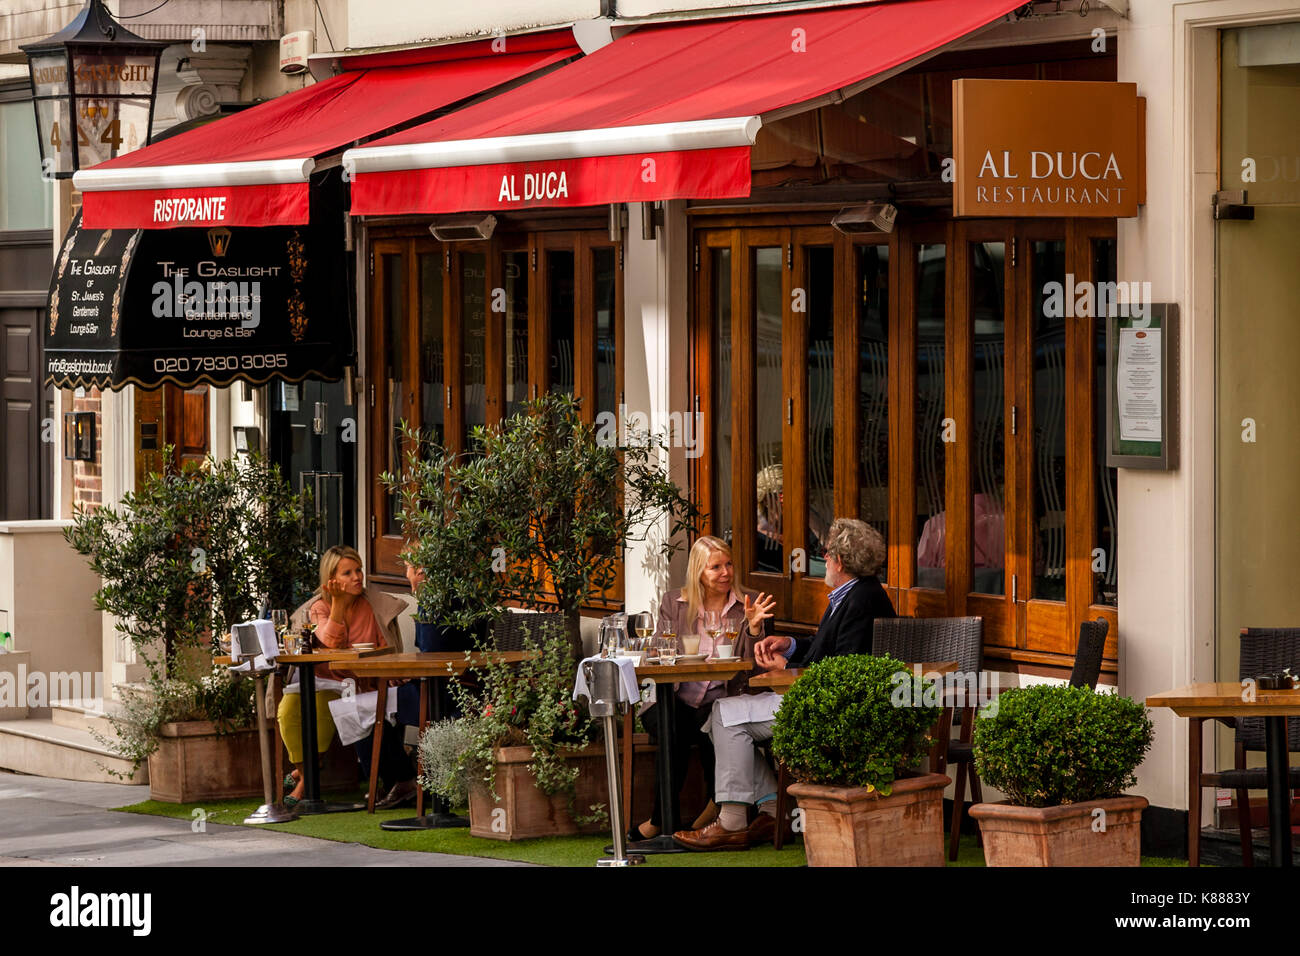 People Sitting Outside The Al Duca Restaurant In Duke Of York Street, St James's, London, UK Stock Photo